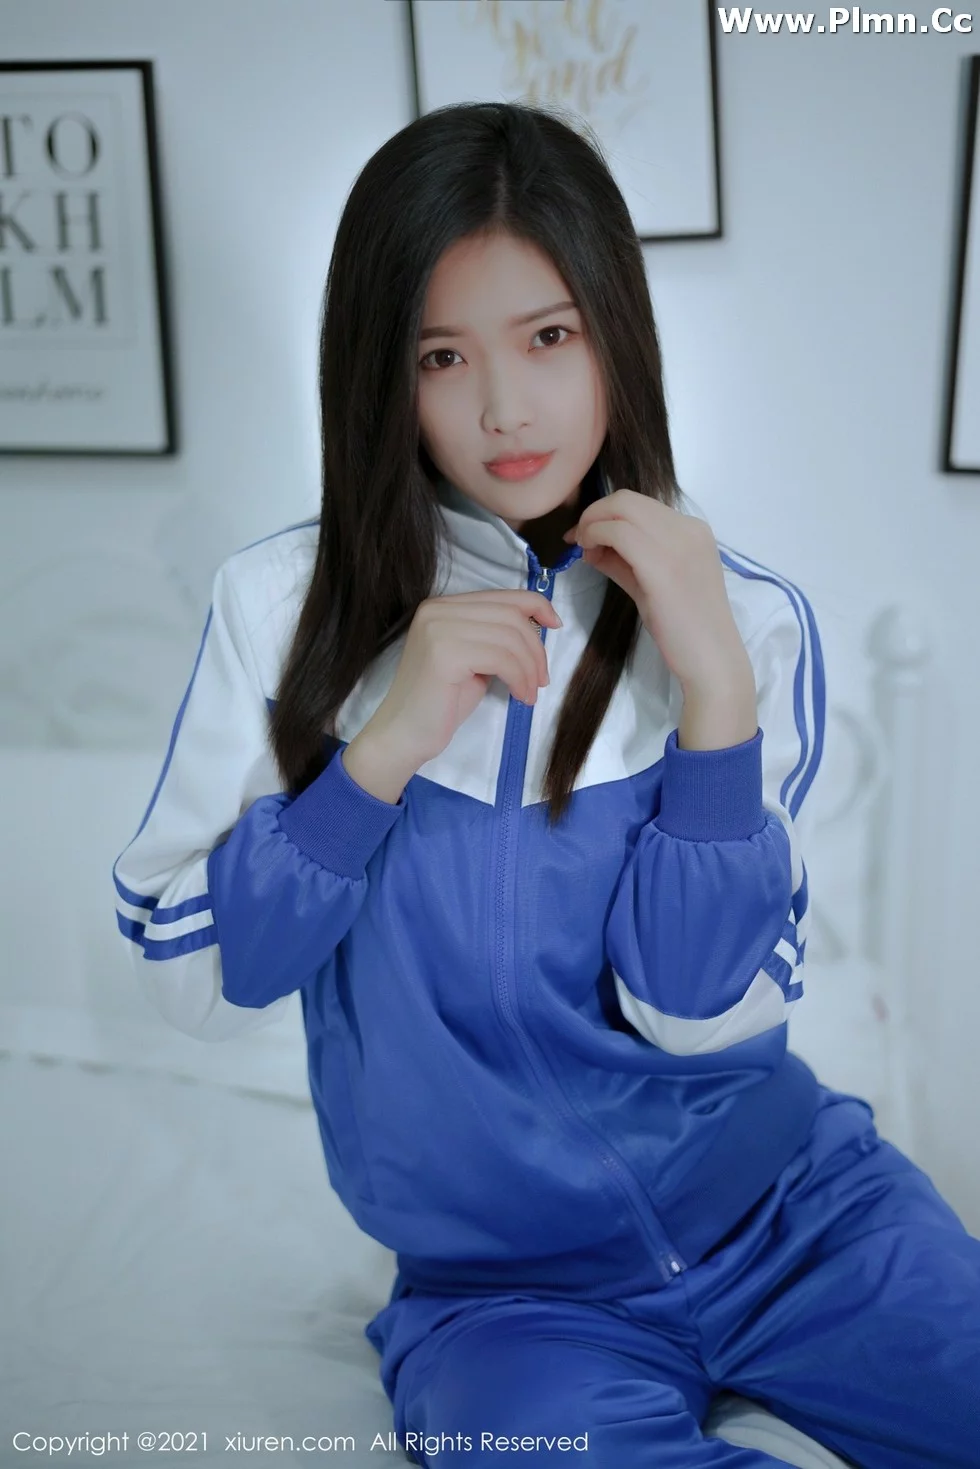 [XiuRen秀人网]No.4252_模特星萌清纯动人蓝色的校服配蕾丝袜半脱秀完美身材诱惑写真49P